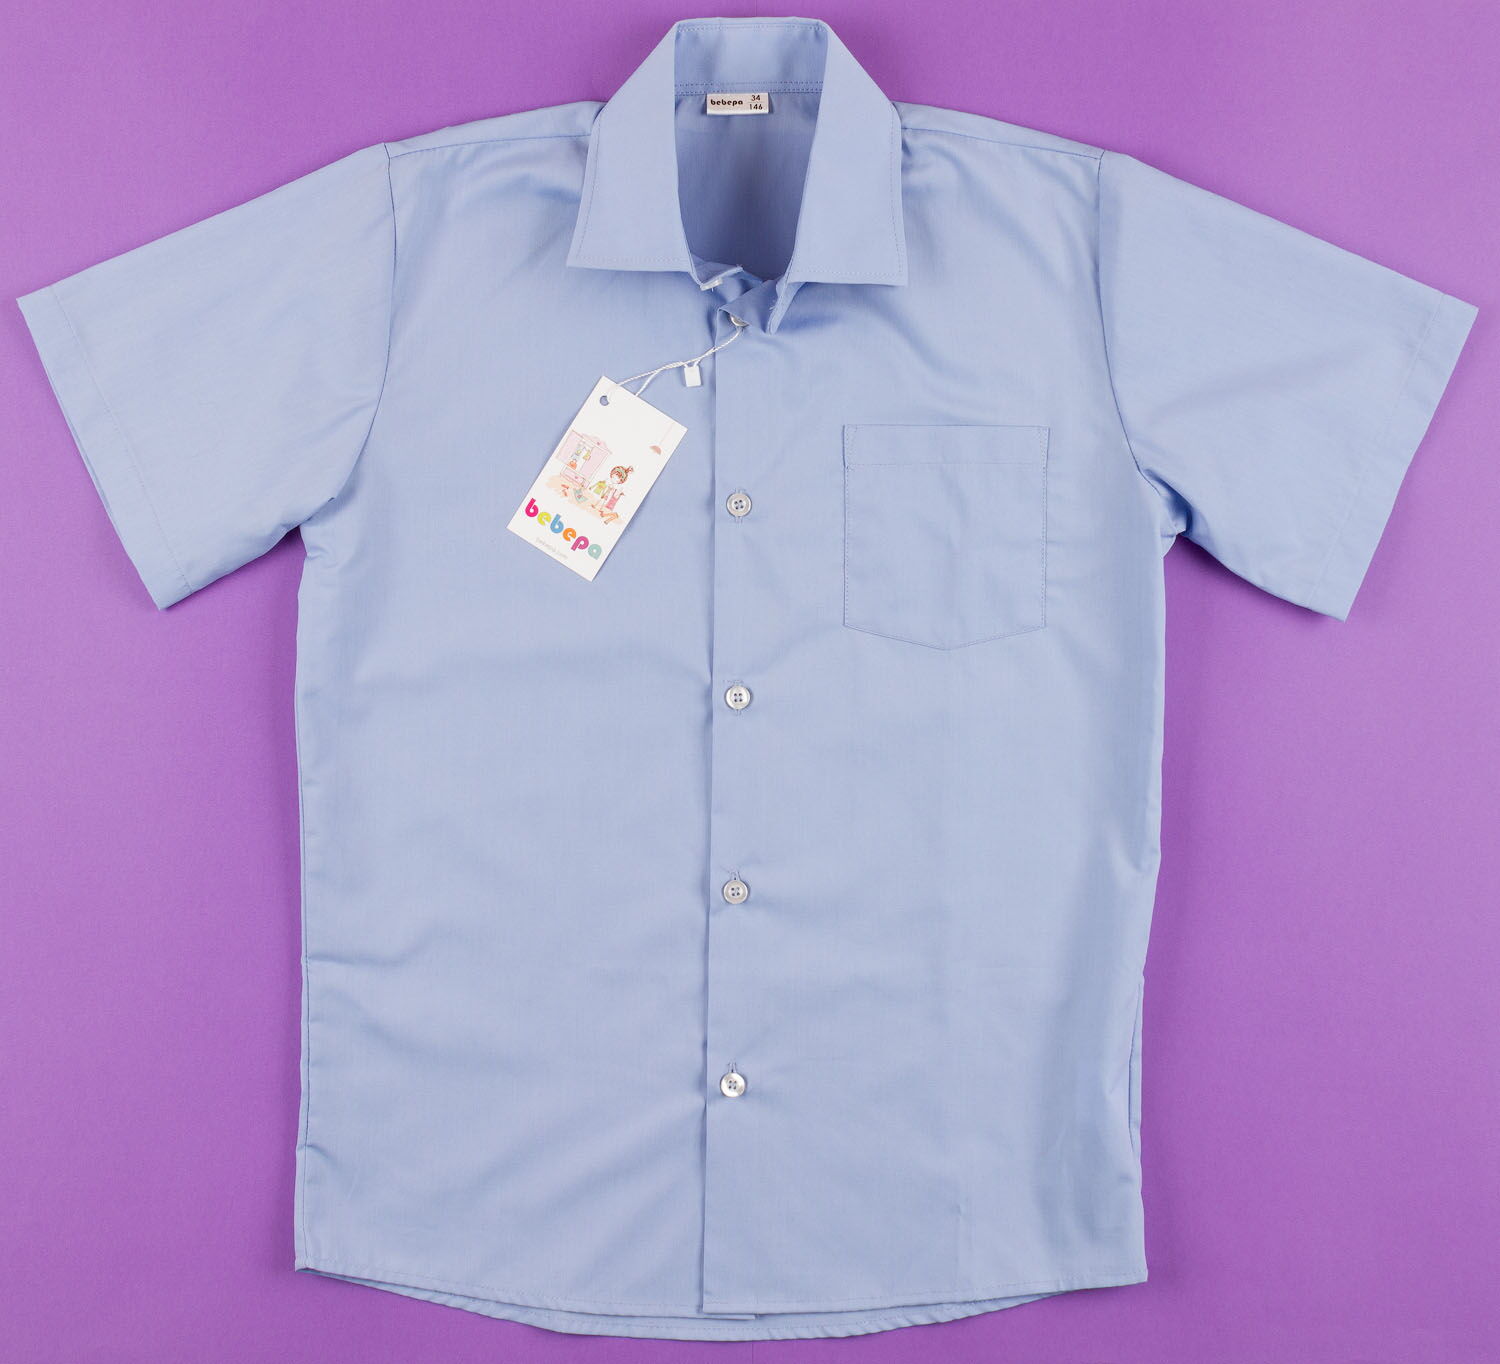 Рубашка с коротким рукавом для мальчика Bebepa синяя 1105-017 - размеры